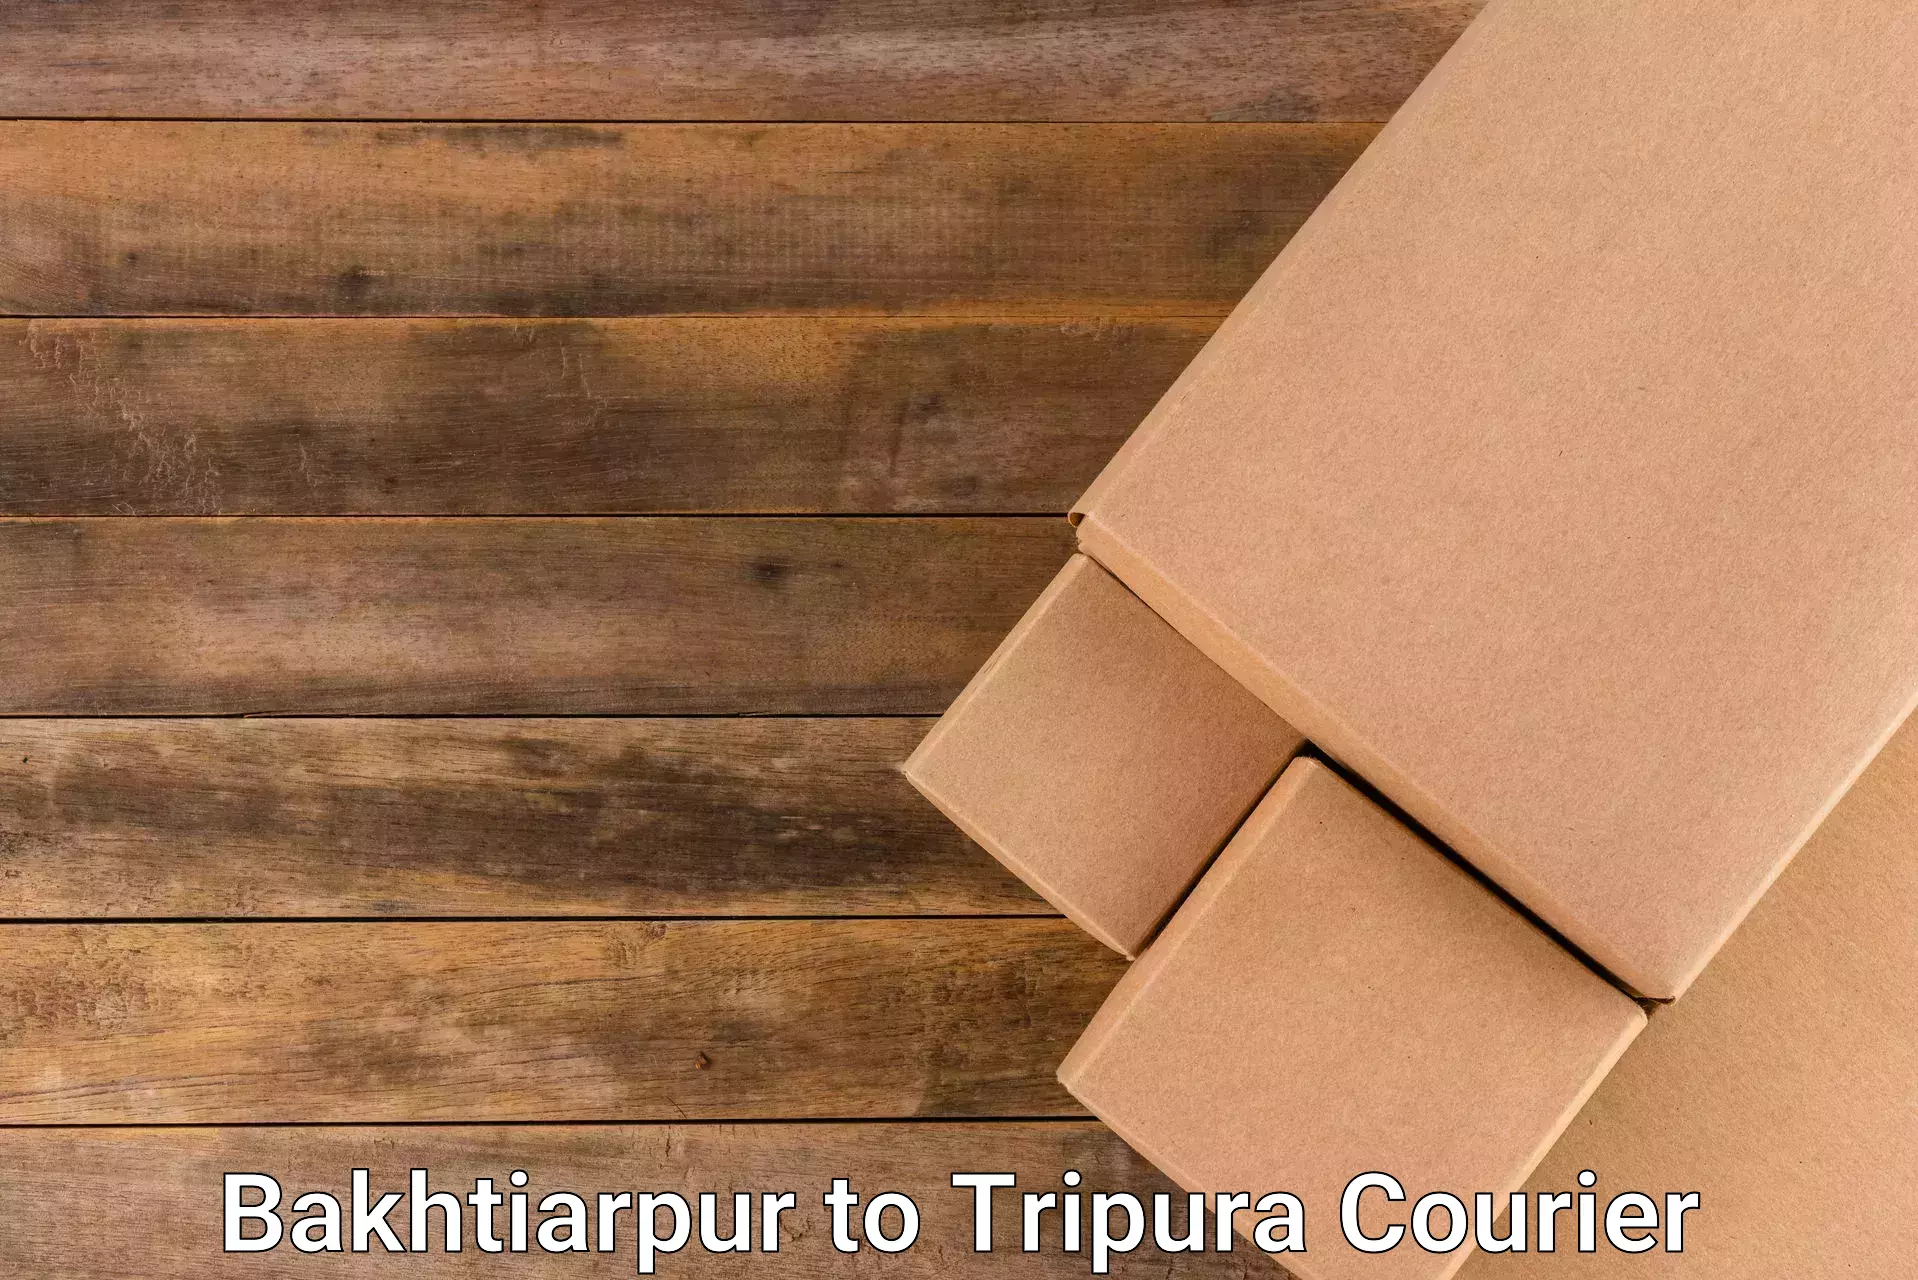 Reliable courier service Bakhtiarpur to Khowai